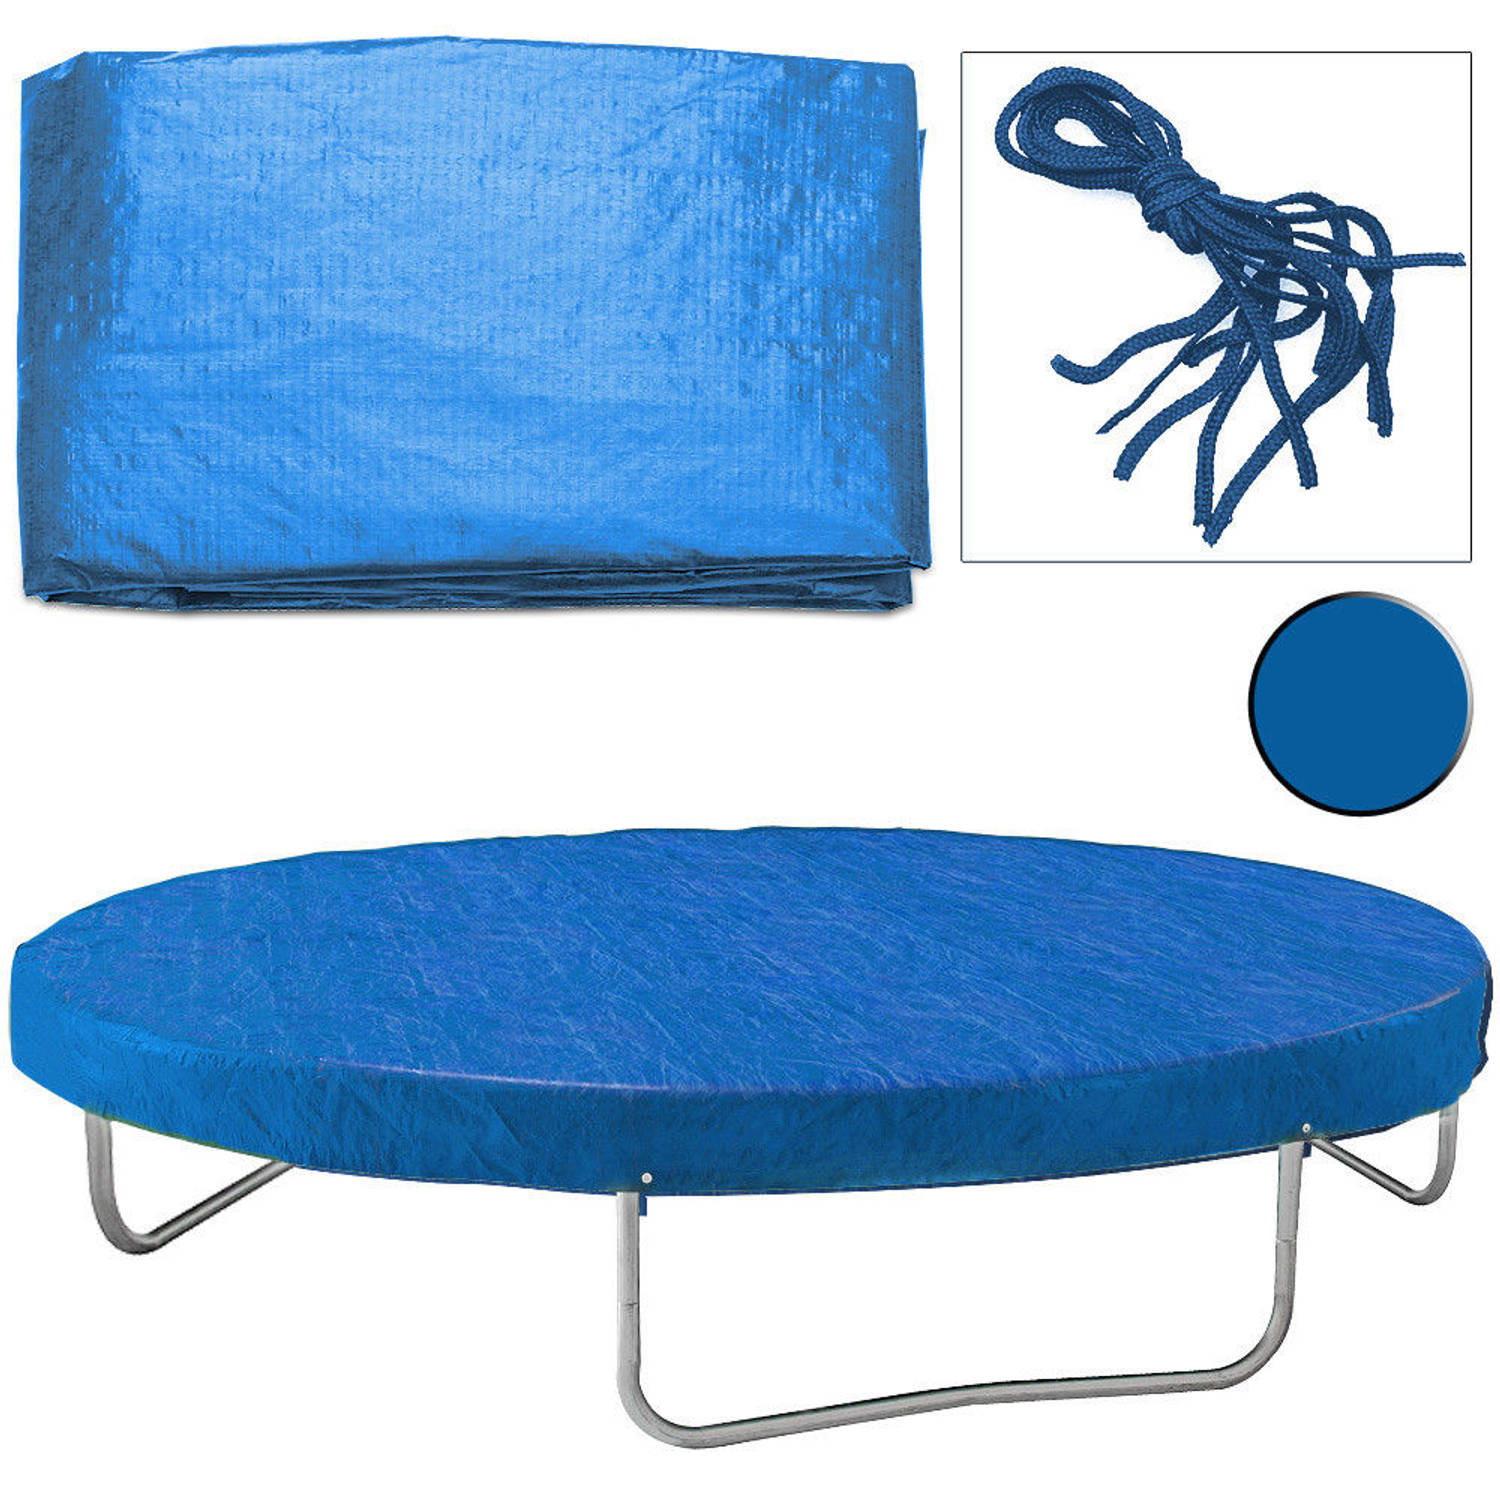 Afdekhoes trampoline, cm, regenhoes | Blokker